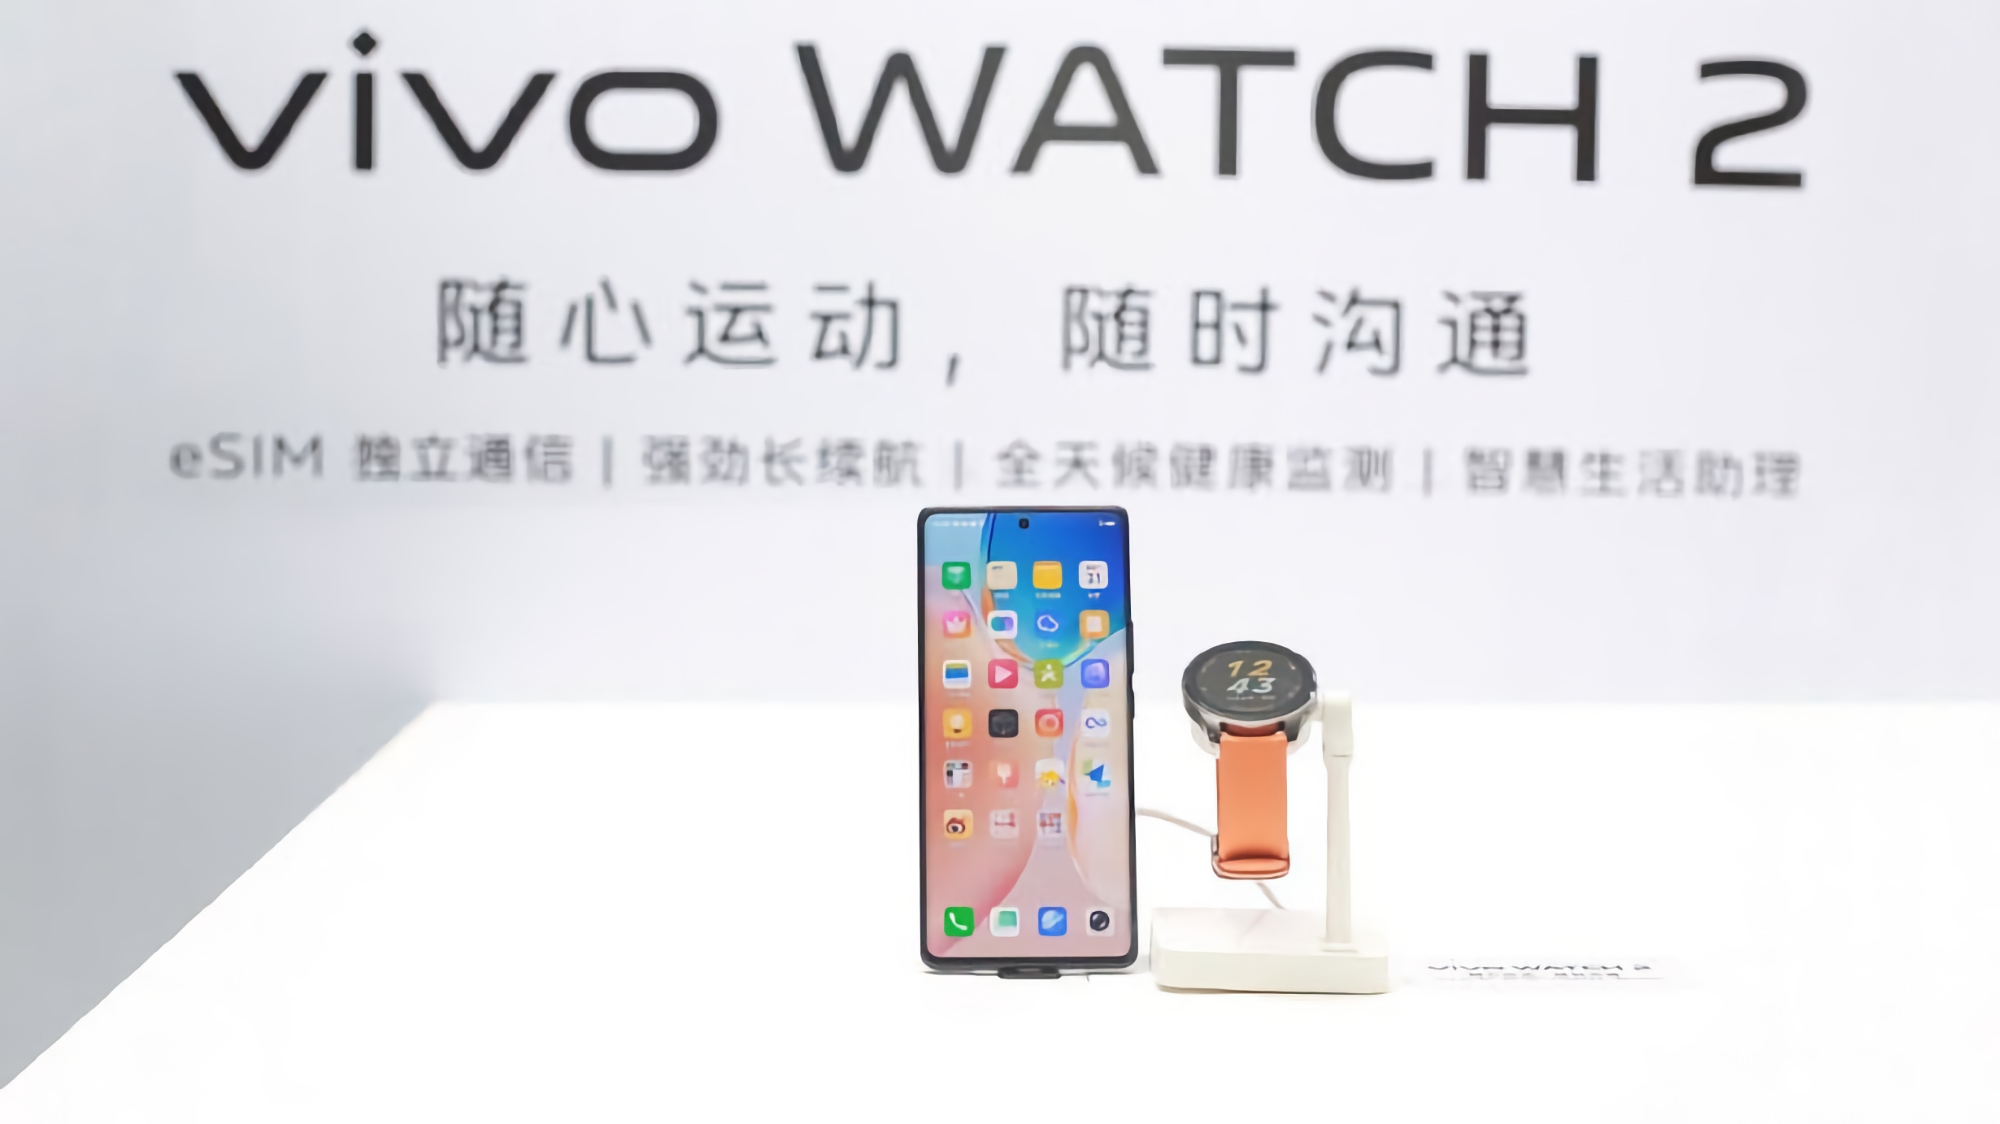 Nie czekając na ogłoszenie: Vivo pokazało inteligentny zegarek Vivo Watch 2 z obsługą eSIM